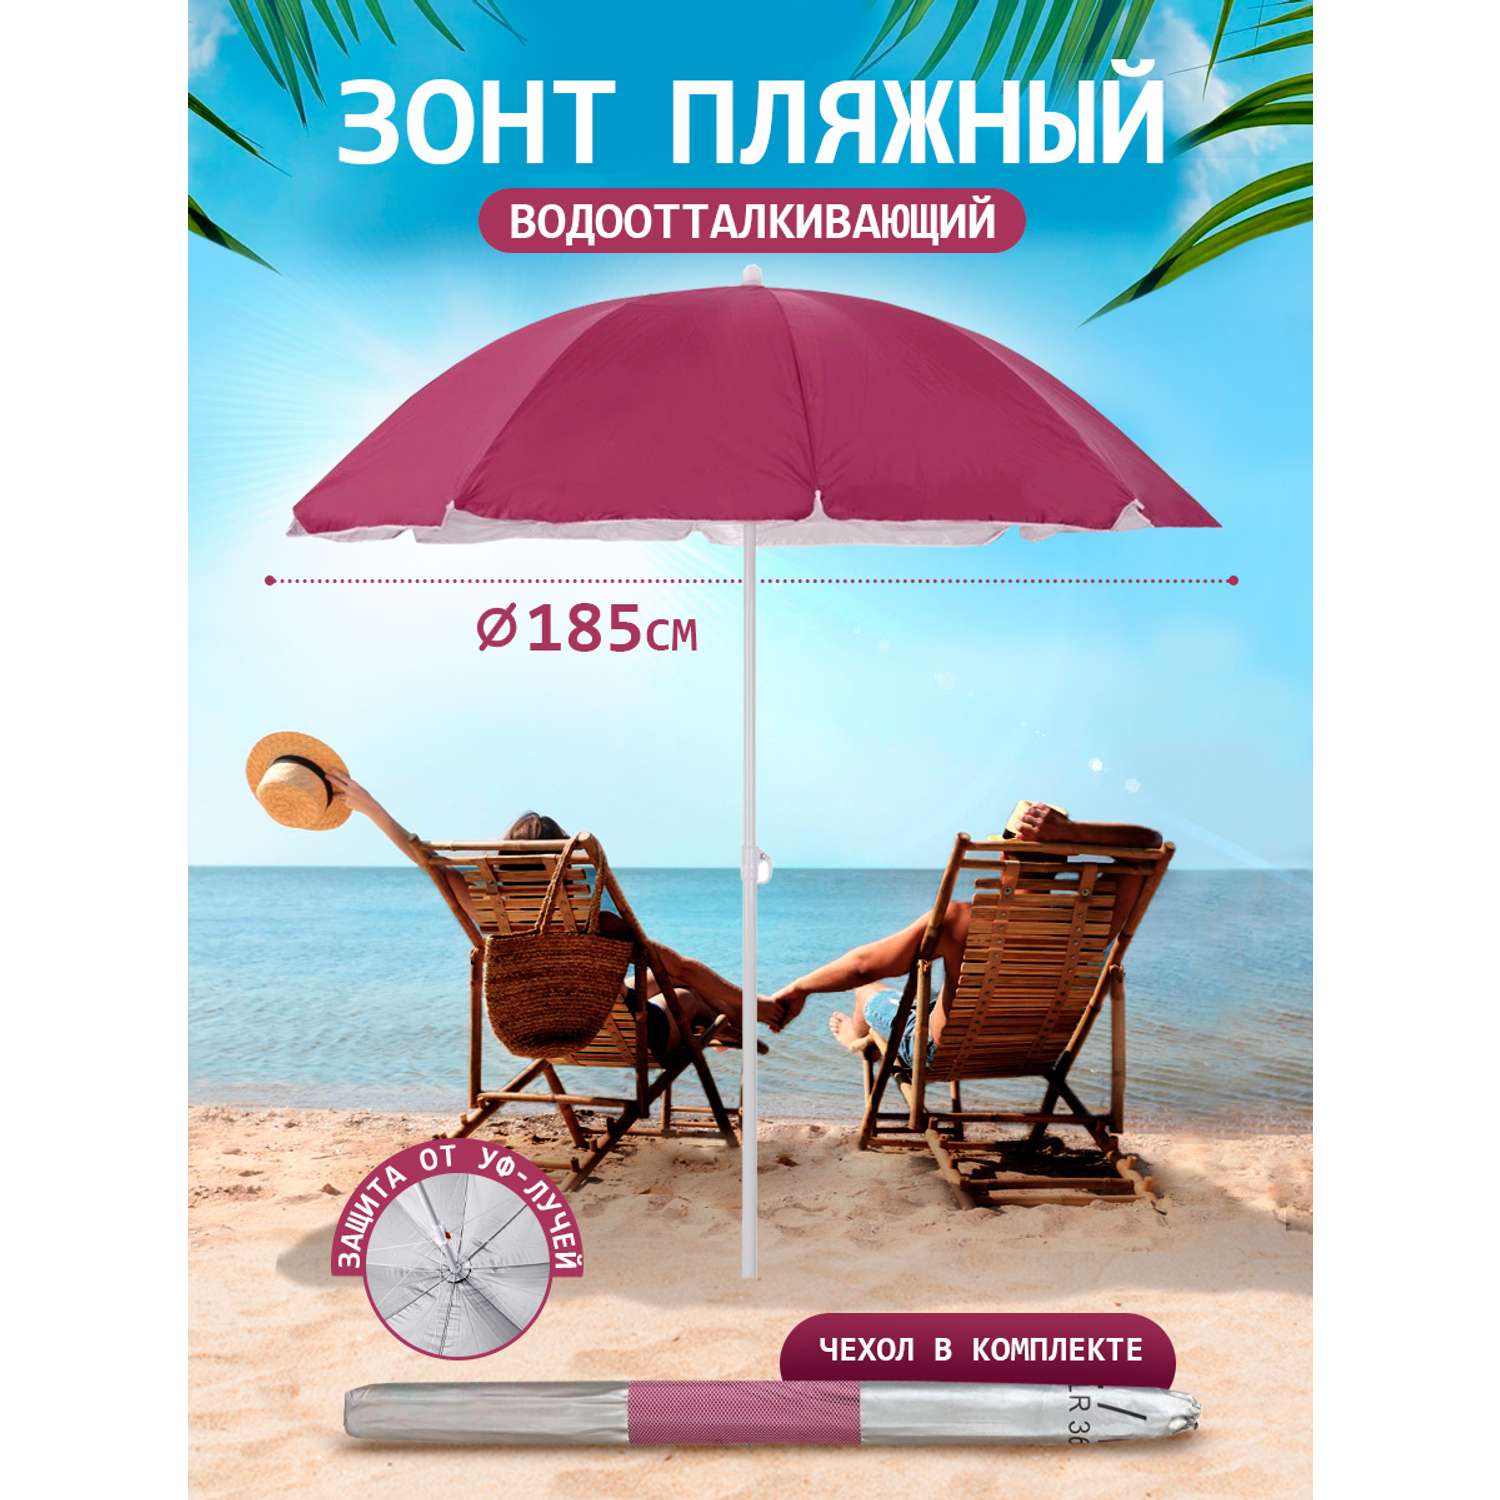 Зонт пляжный BABY STYLE большой от солнца садовый дачный 1.85 м бордовый - фото 1